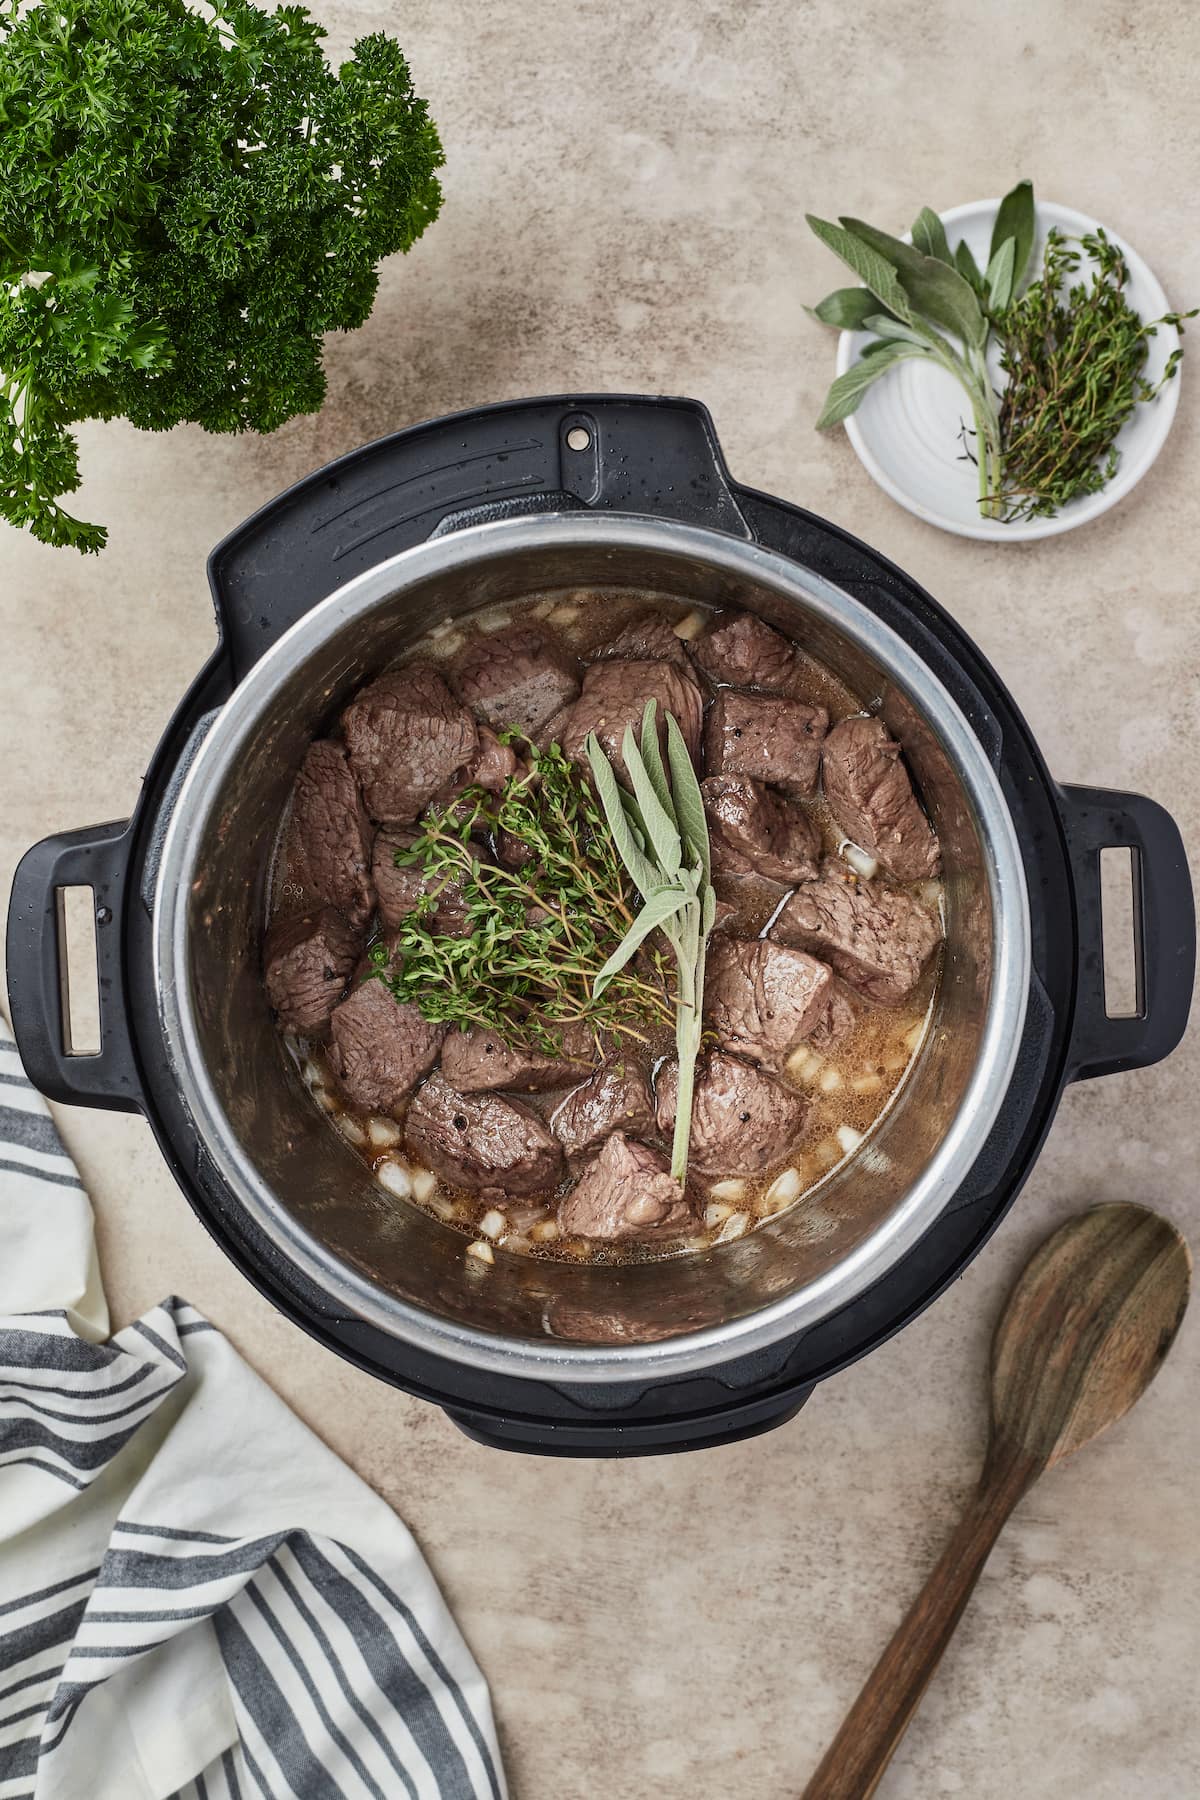 Voeg het gebruinde rundvlees toe aan een snelle pan, samen met de uien, knoflook en kruiden.